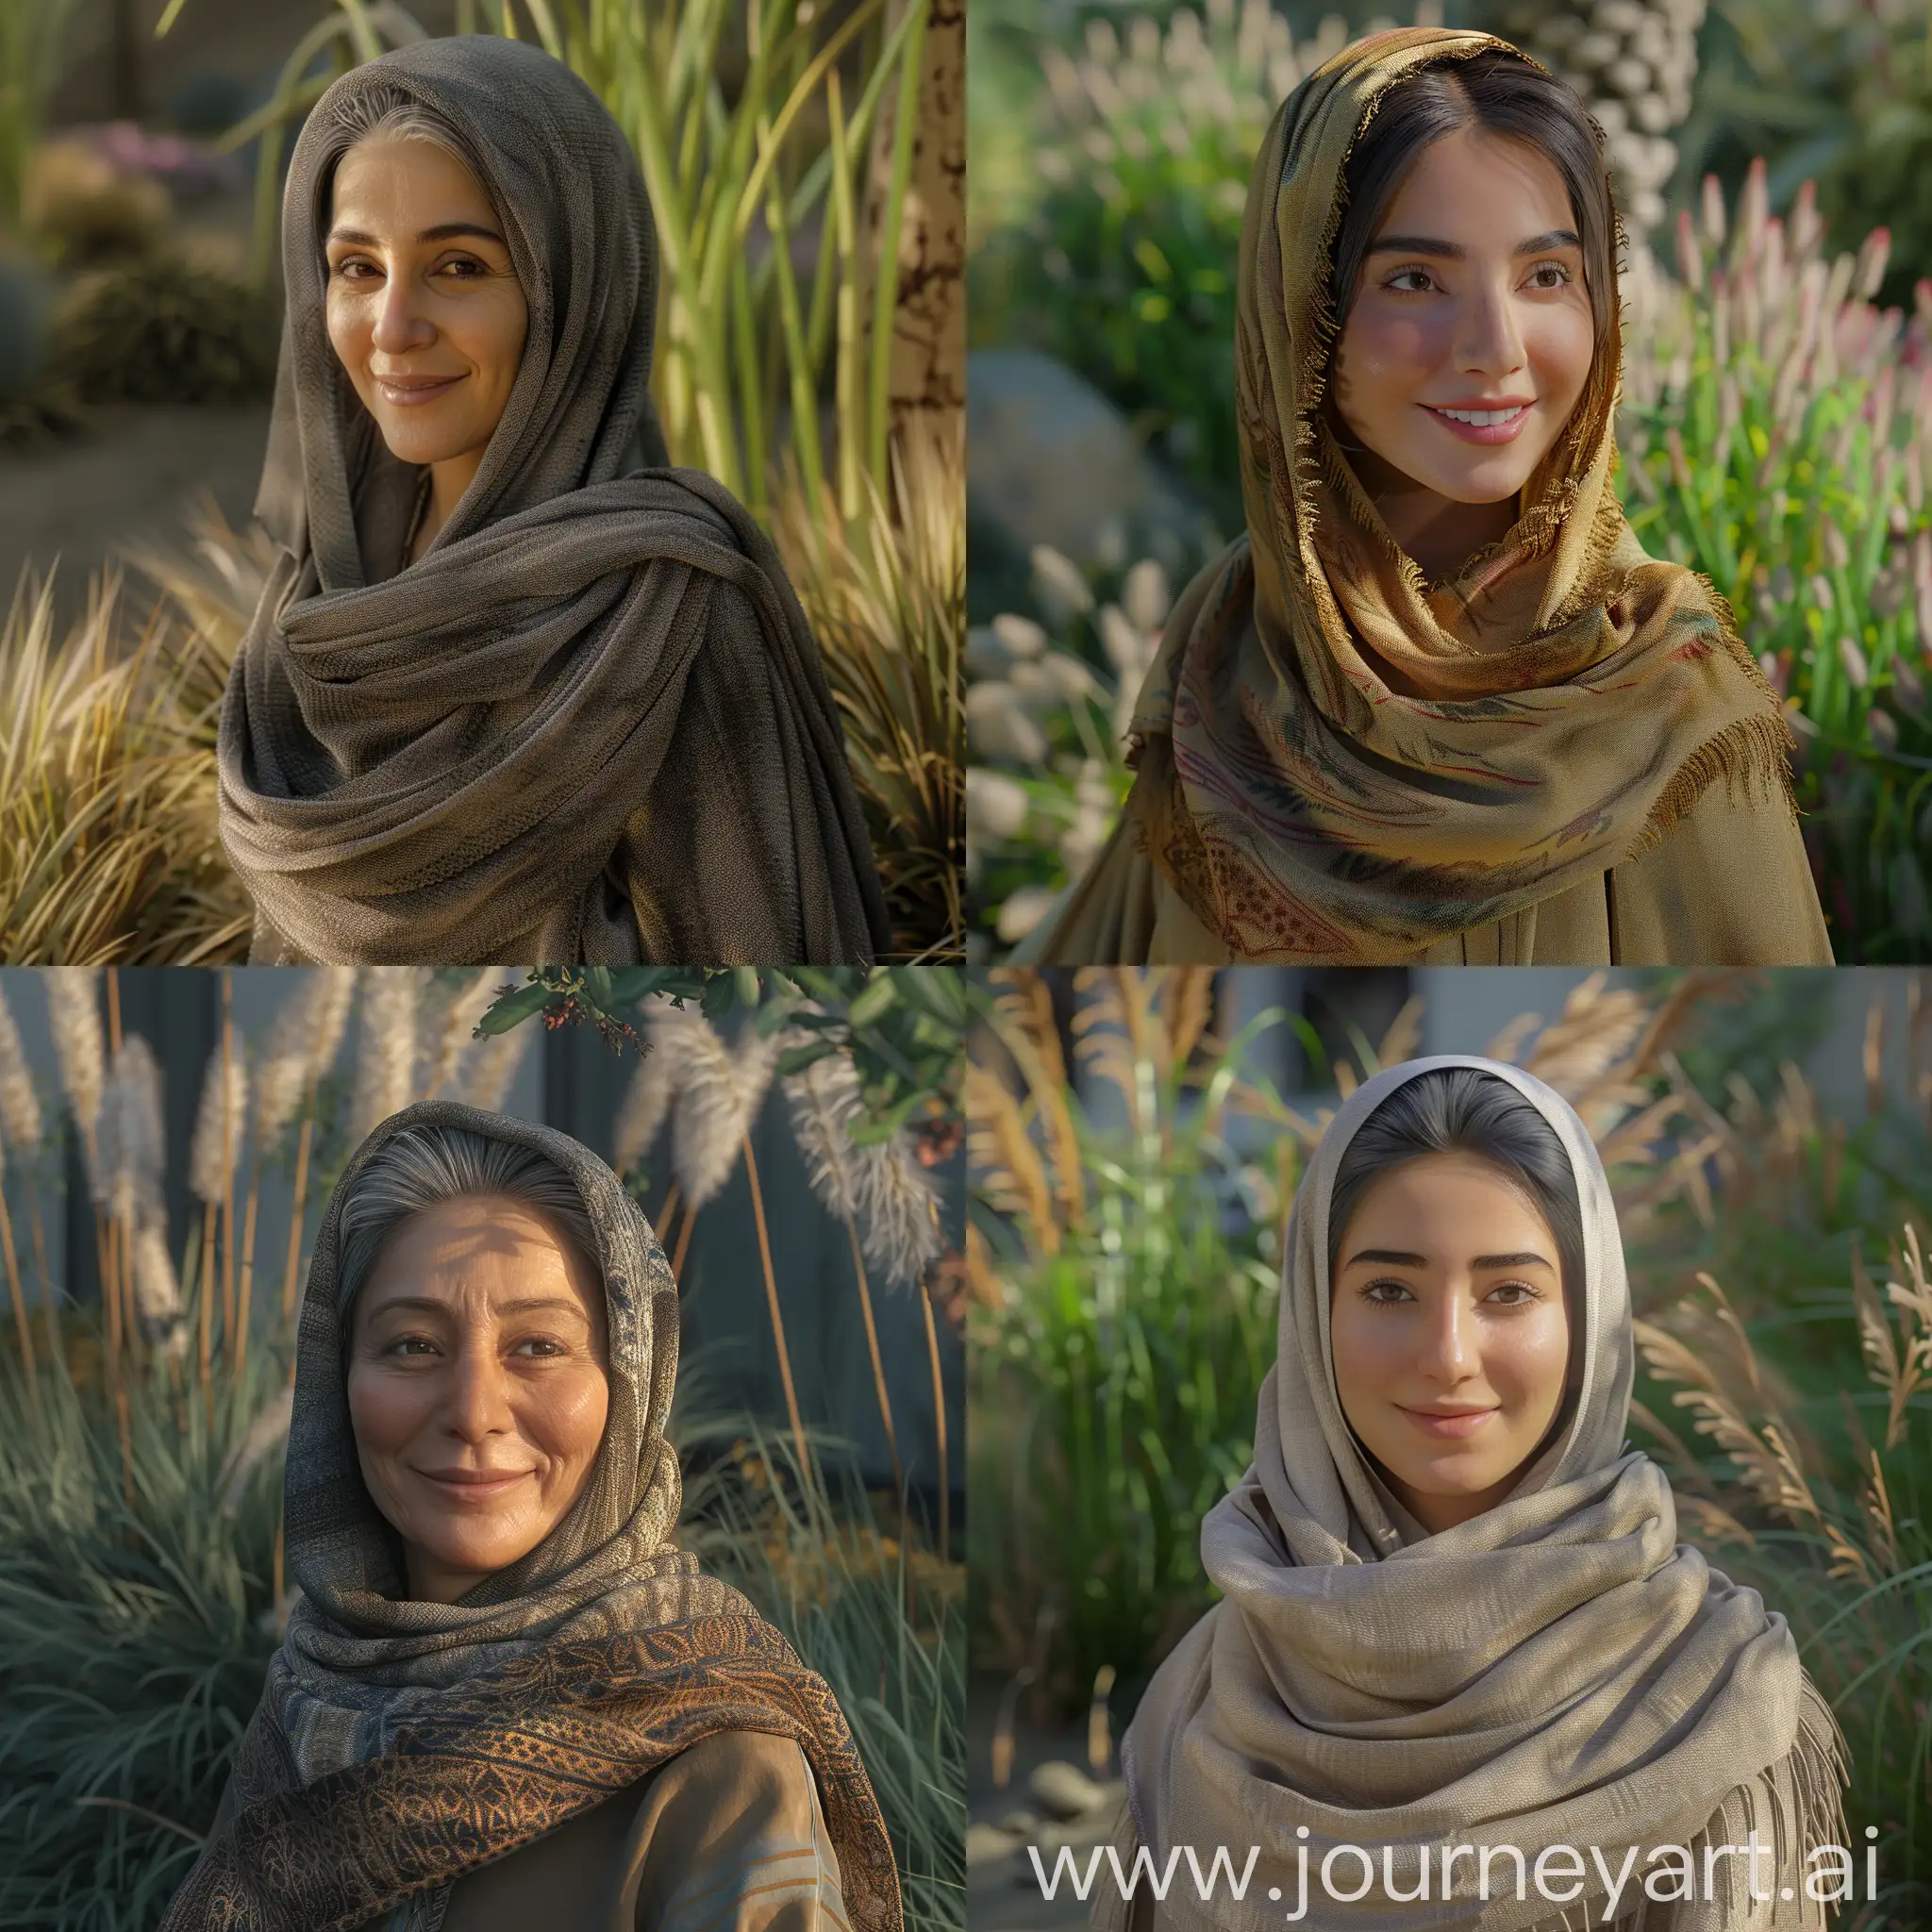 Beautiful-Iranian-Woman-in-Hijab-Smiling-in-Lush-Garden